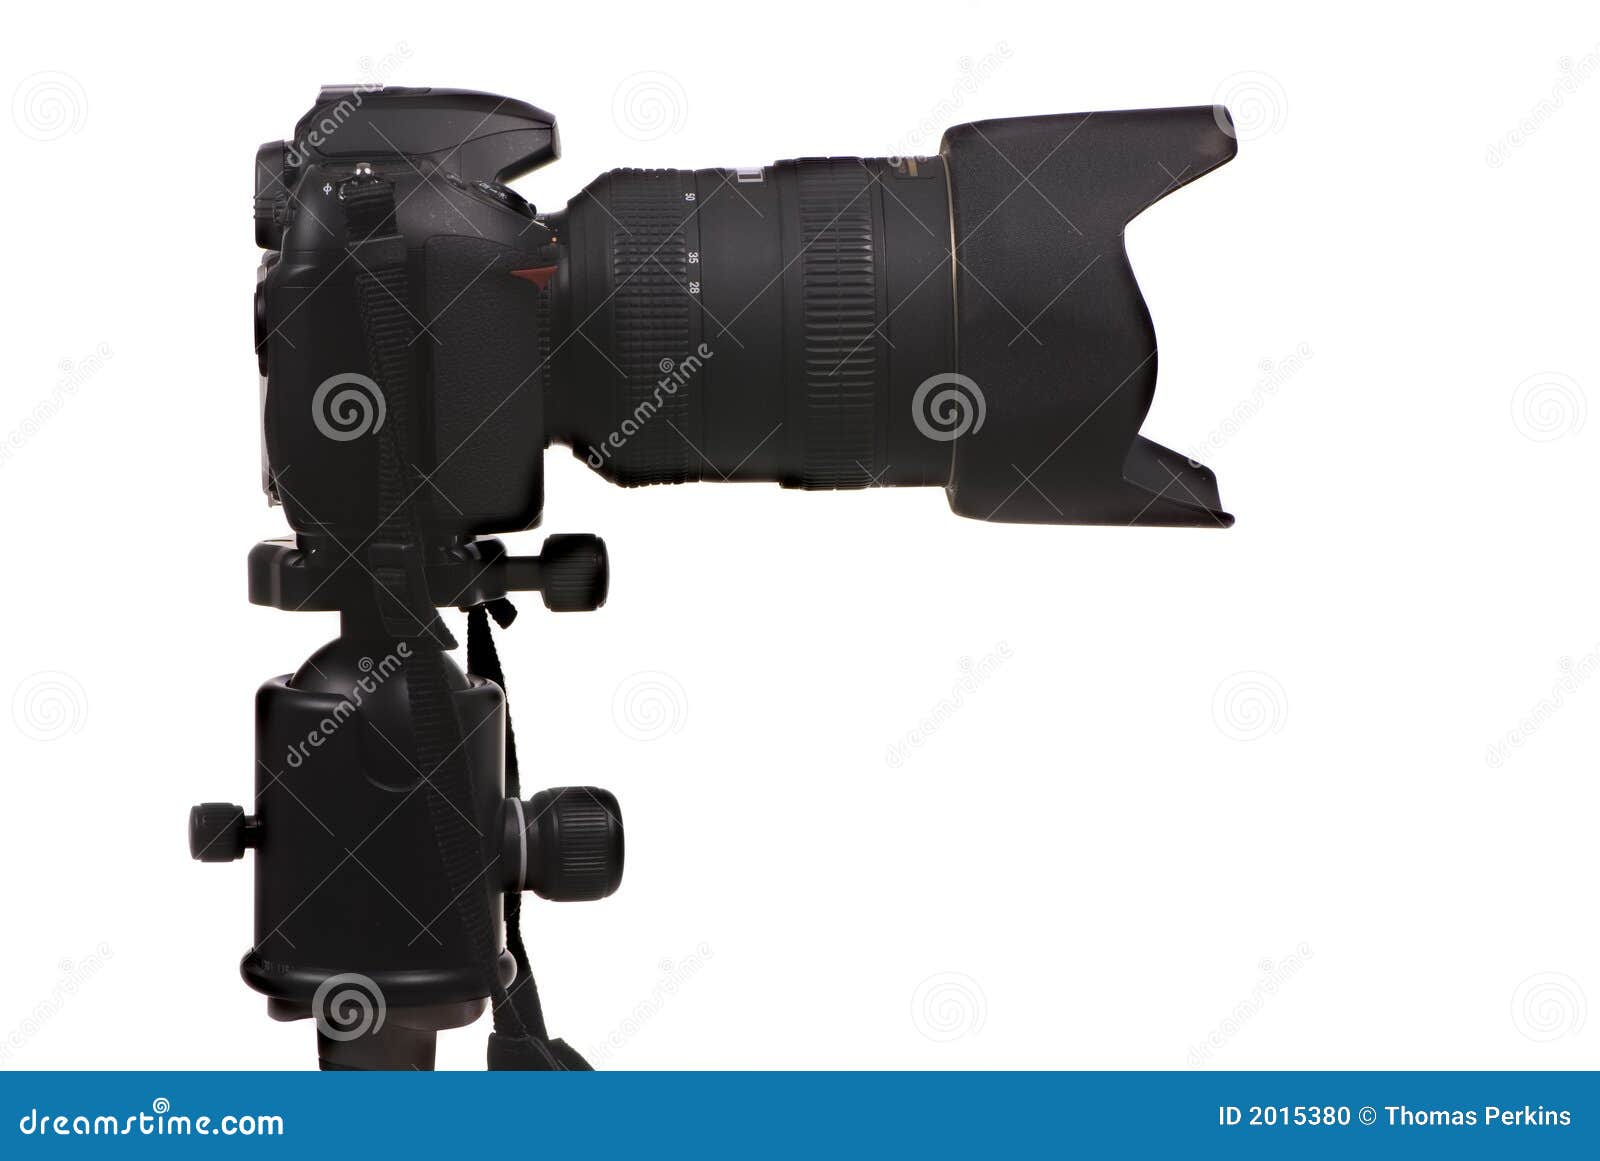 Digital Camera DSLR Side Shot Stock Photo Image of